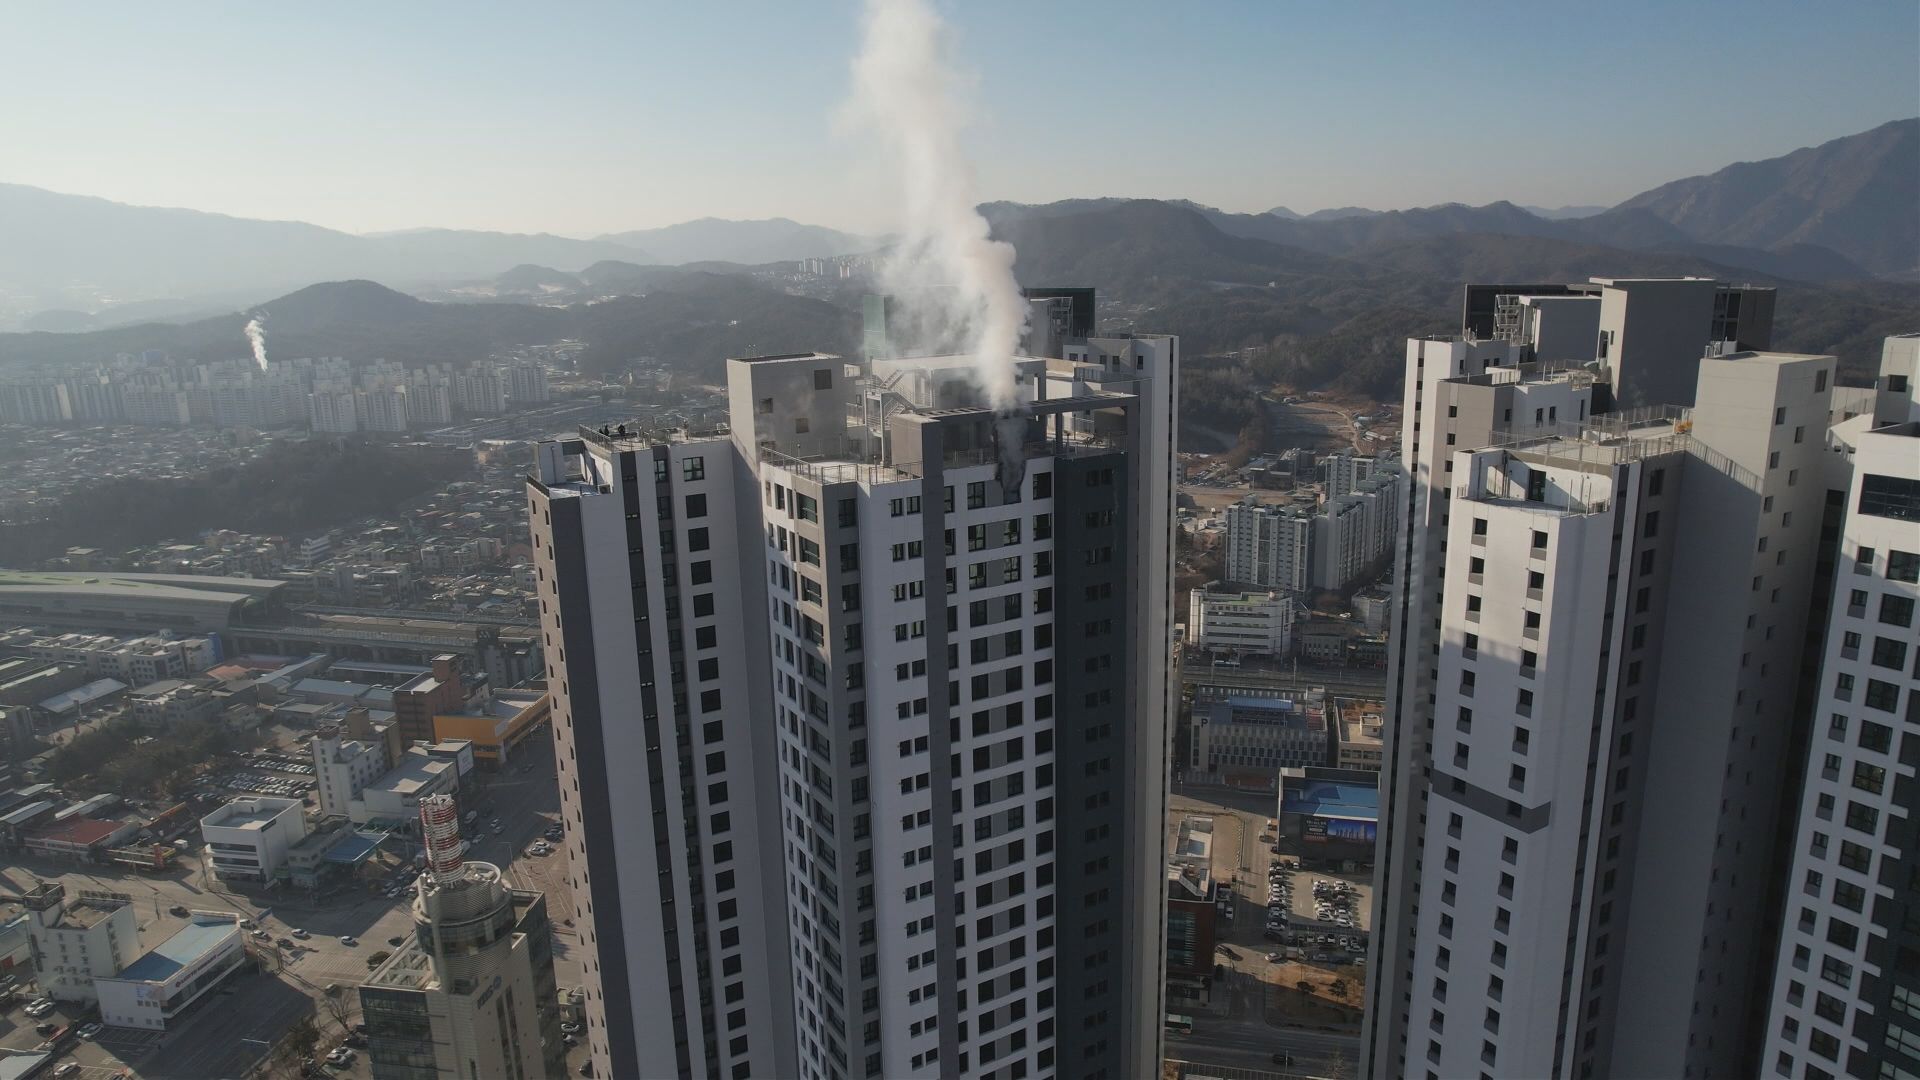 불이 난 강원도 춘천의 아파트. 49층 높이 건물의 꼭대기 층에서 불이 났다.